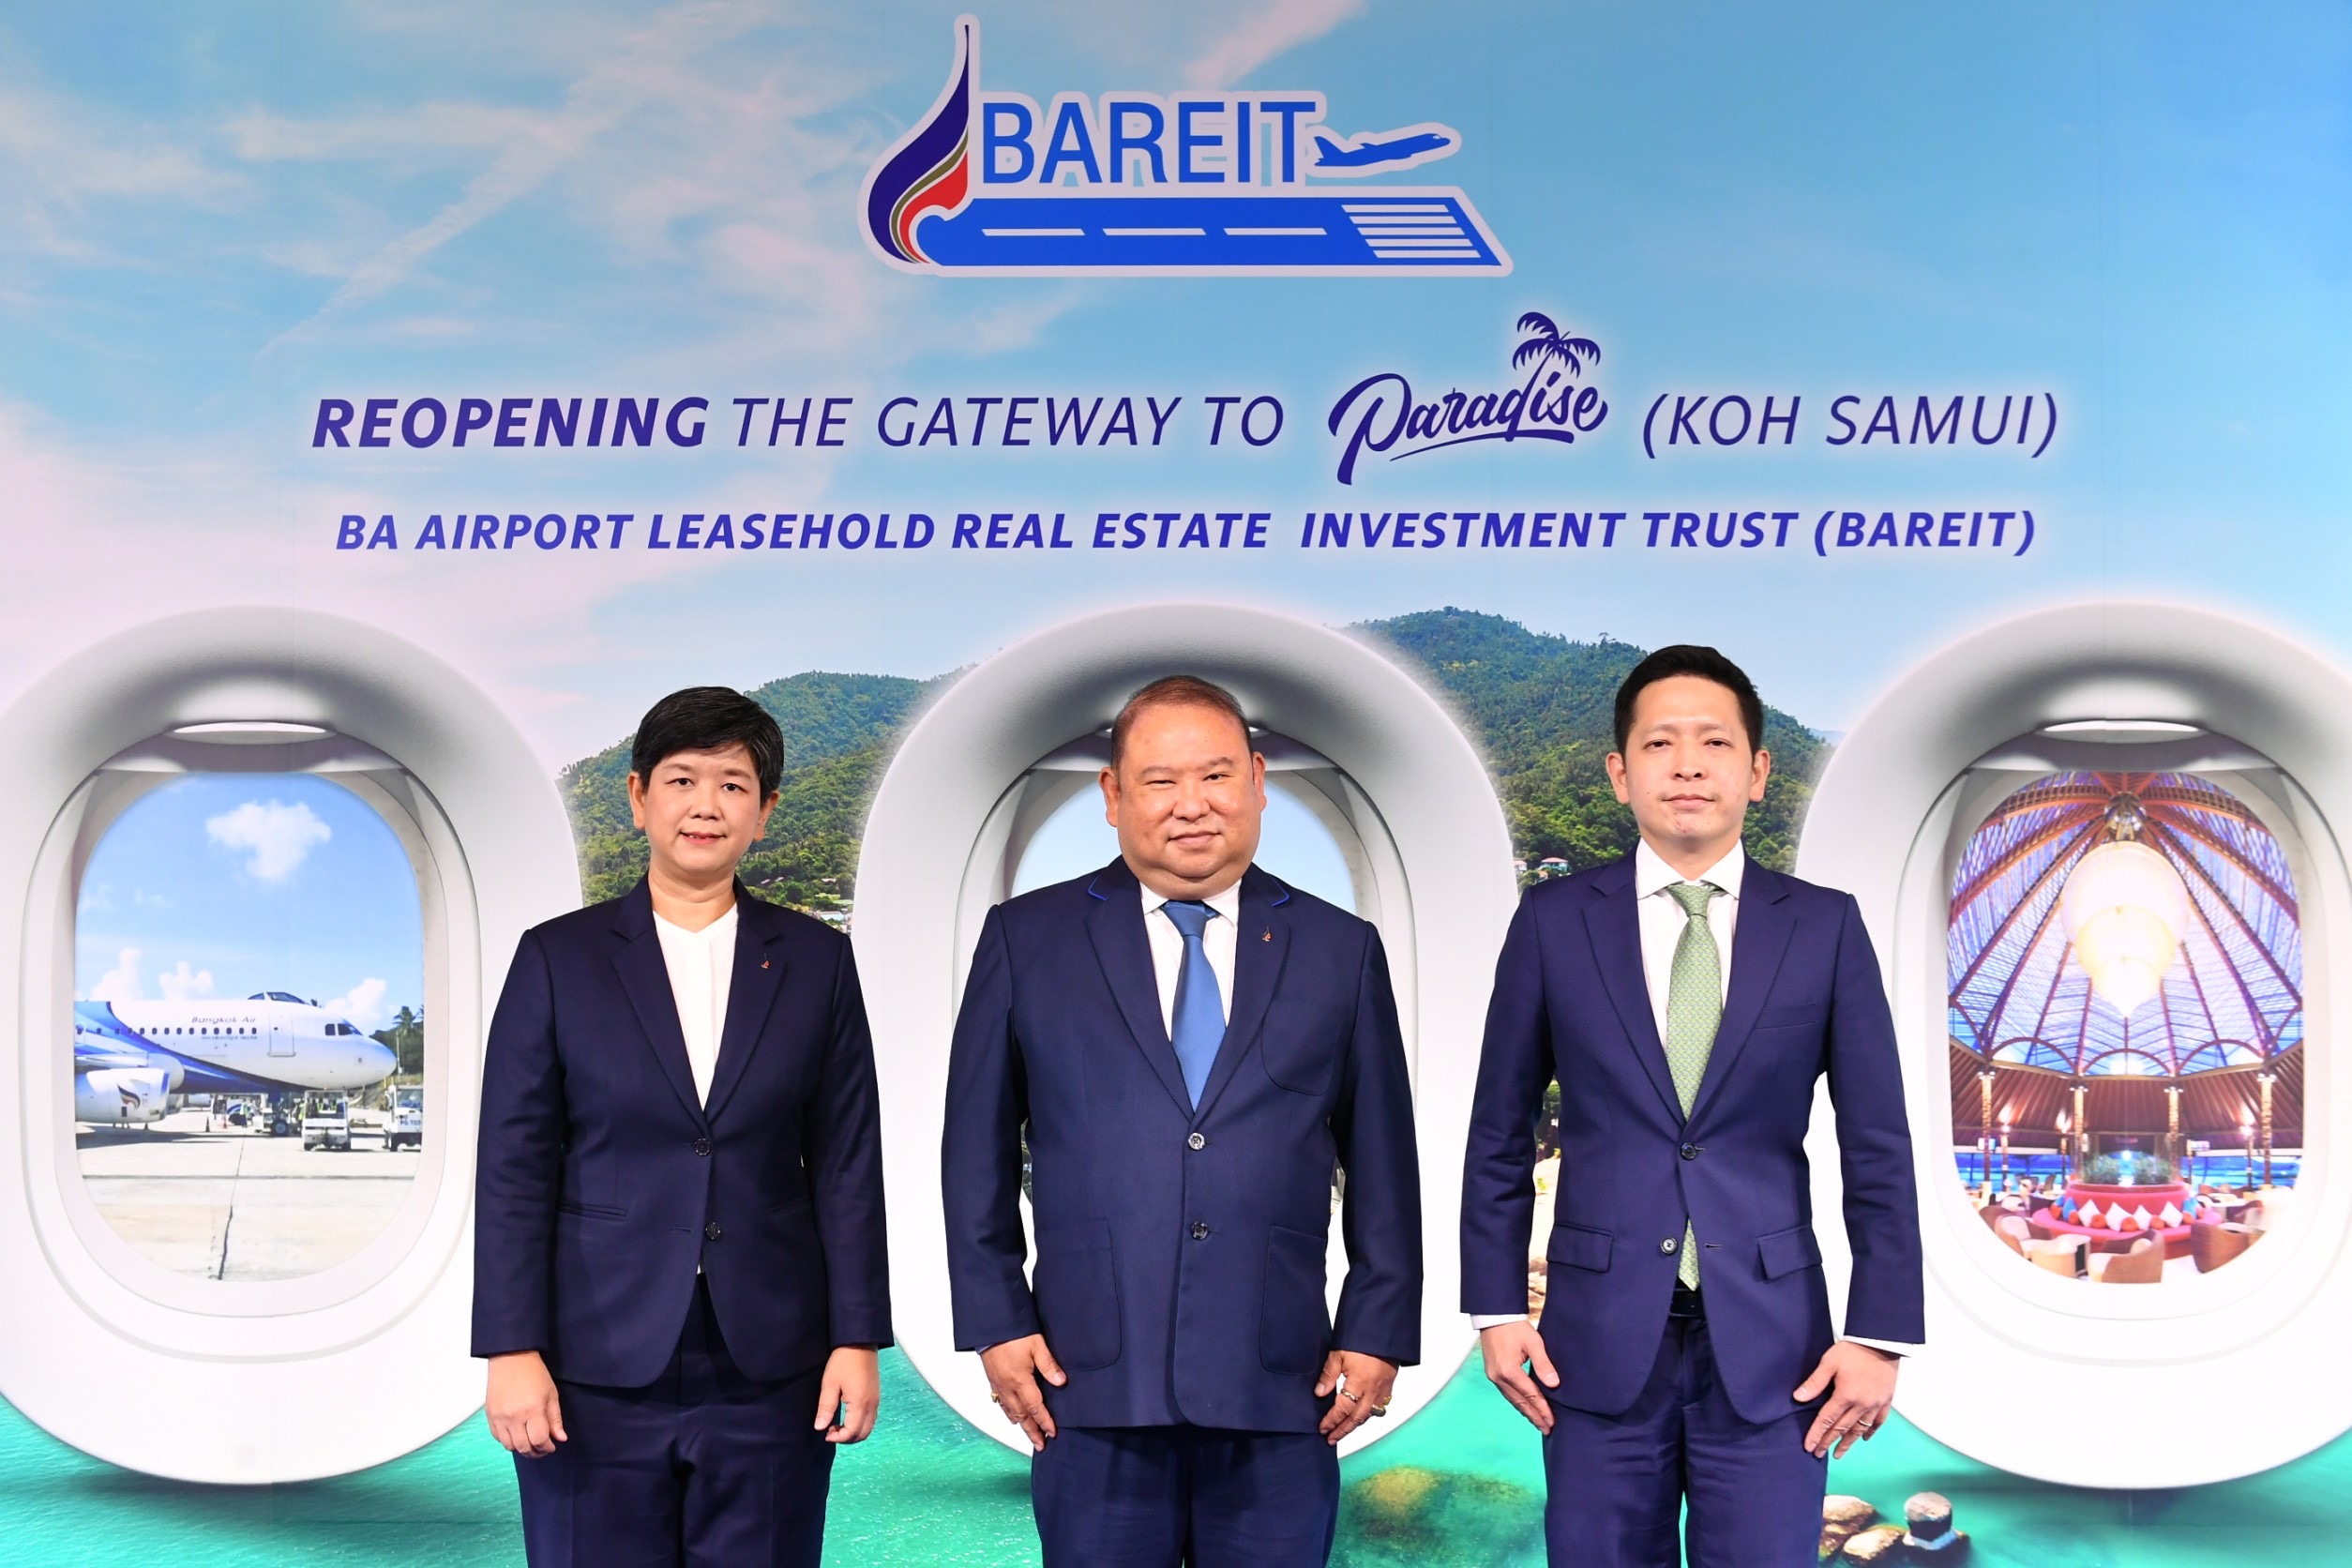 กองทรัสต์ BAREIT ชูจุดเด่นทรัพย์สินสนามบินสมุย   เปิดจองซื้อหน่วยทรัสต์ 22-26 สิงหาคม นี้